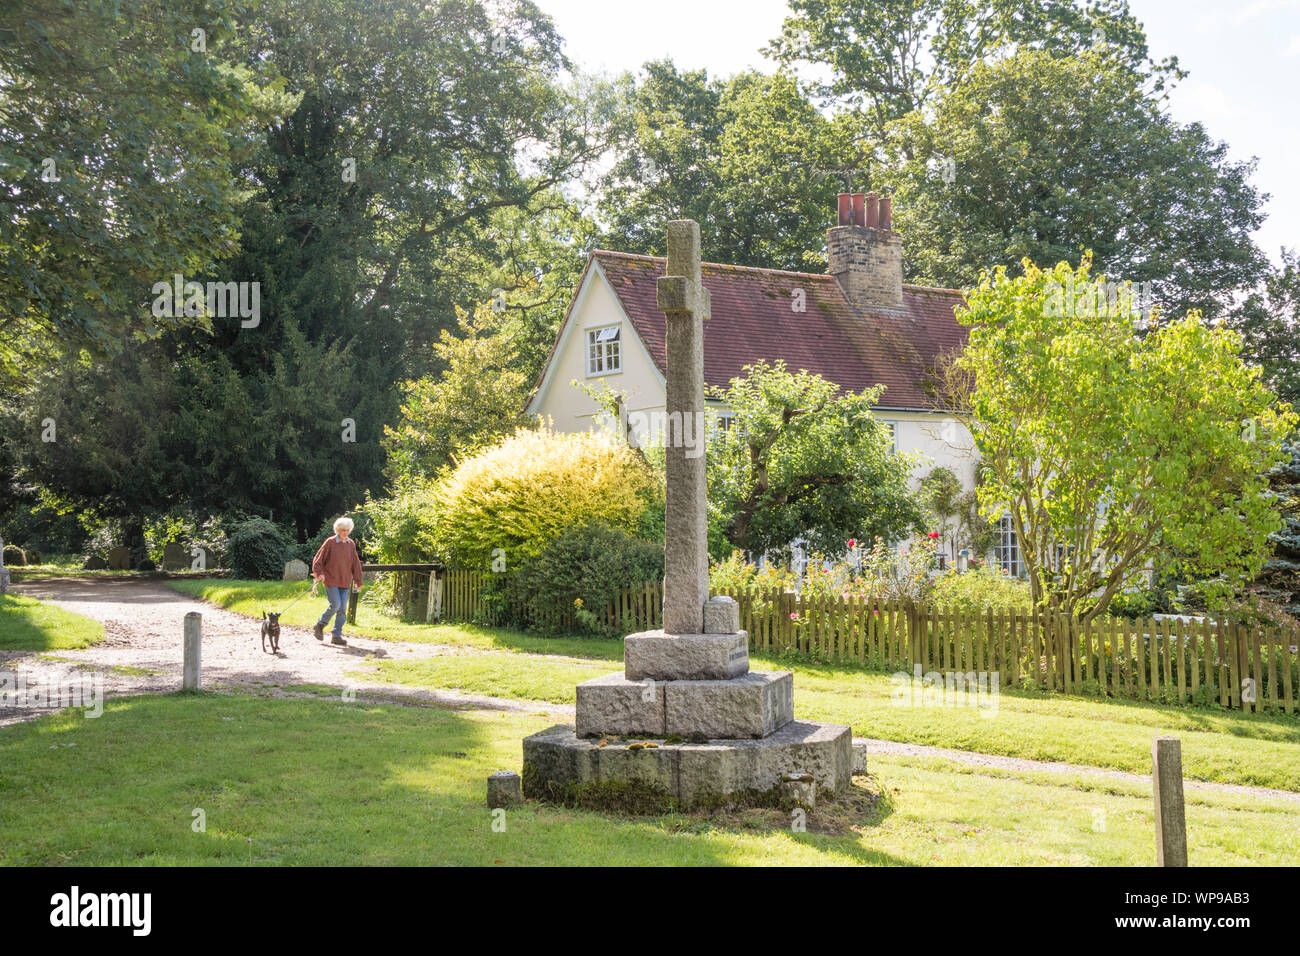 Wir haben das Village Green und strohgedeckten Cottages Earl Soham, Suffolk, England, Großbritannien Stockfoto